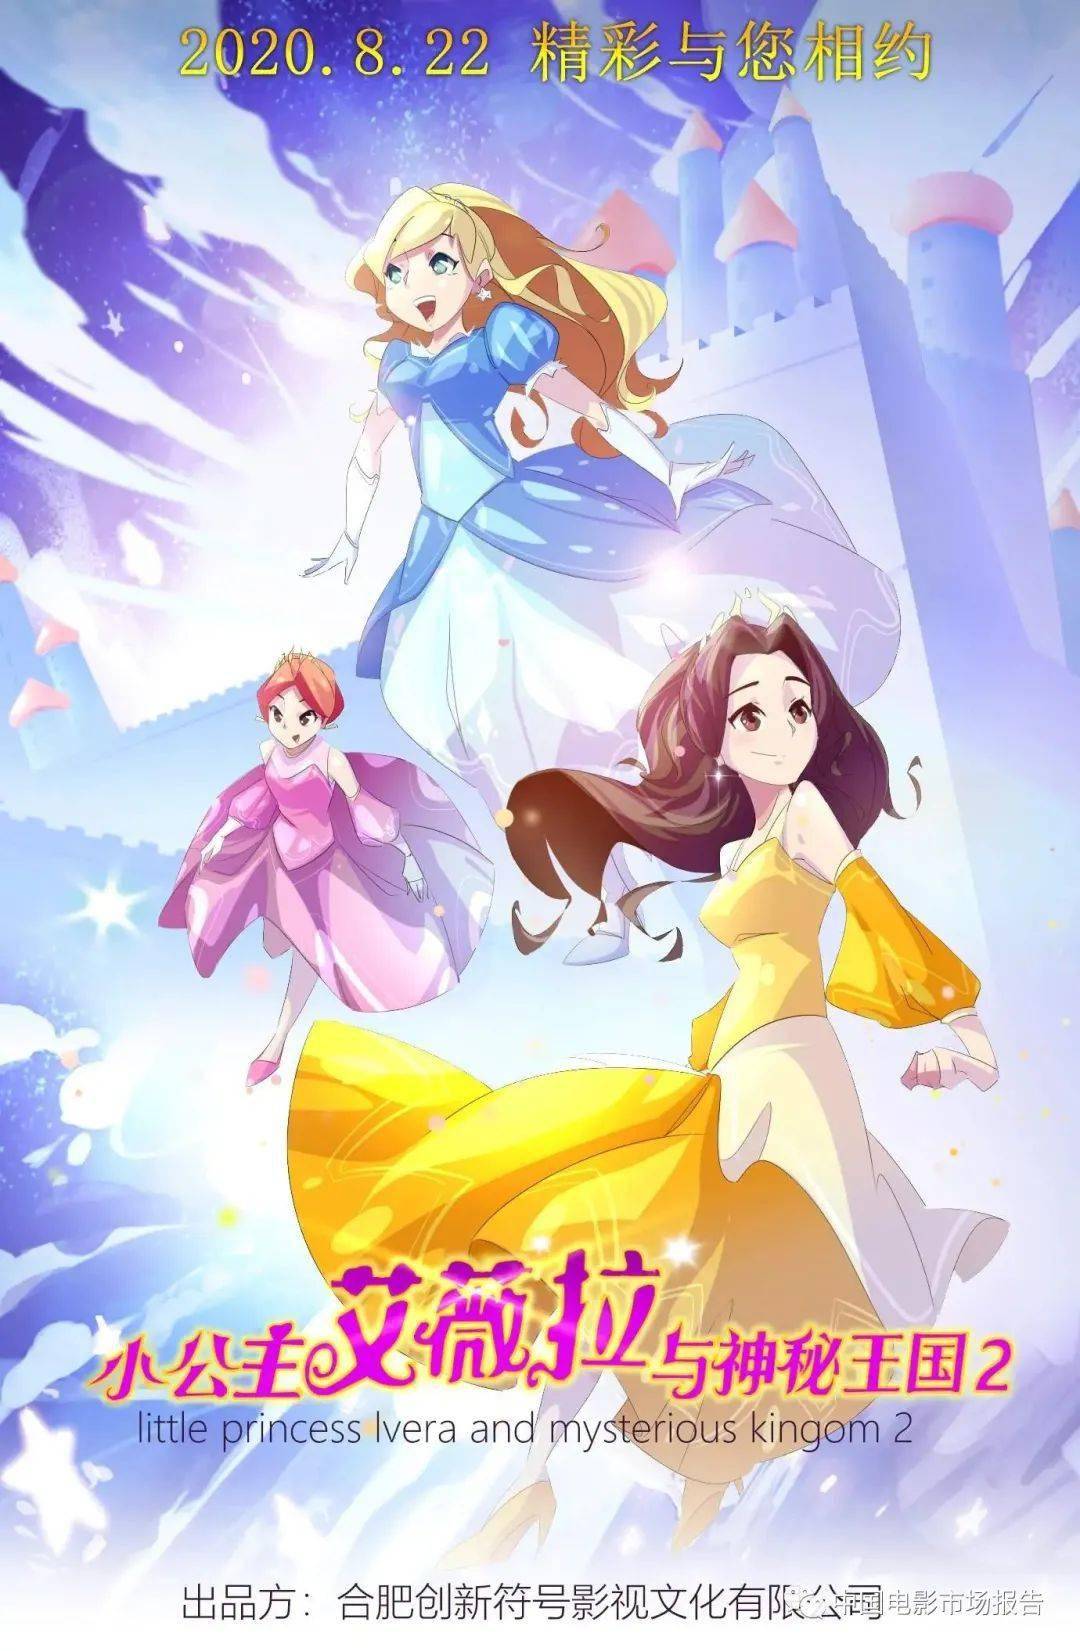 小公主艾薇拉与神秘王国2动画 - 2020/8/22 上映导演 :代长浩编剧 :刘